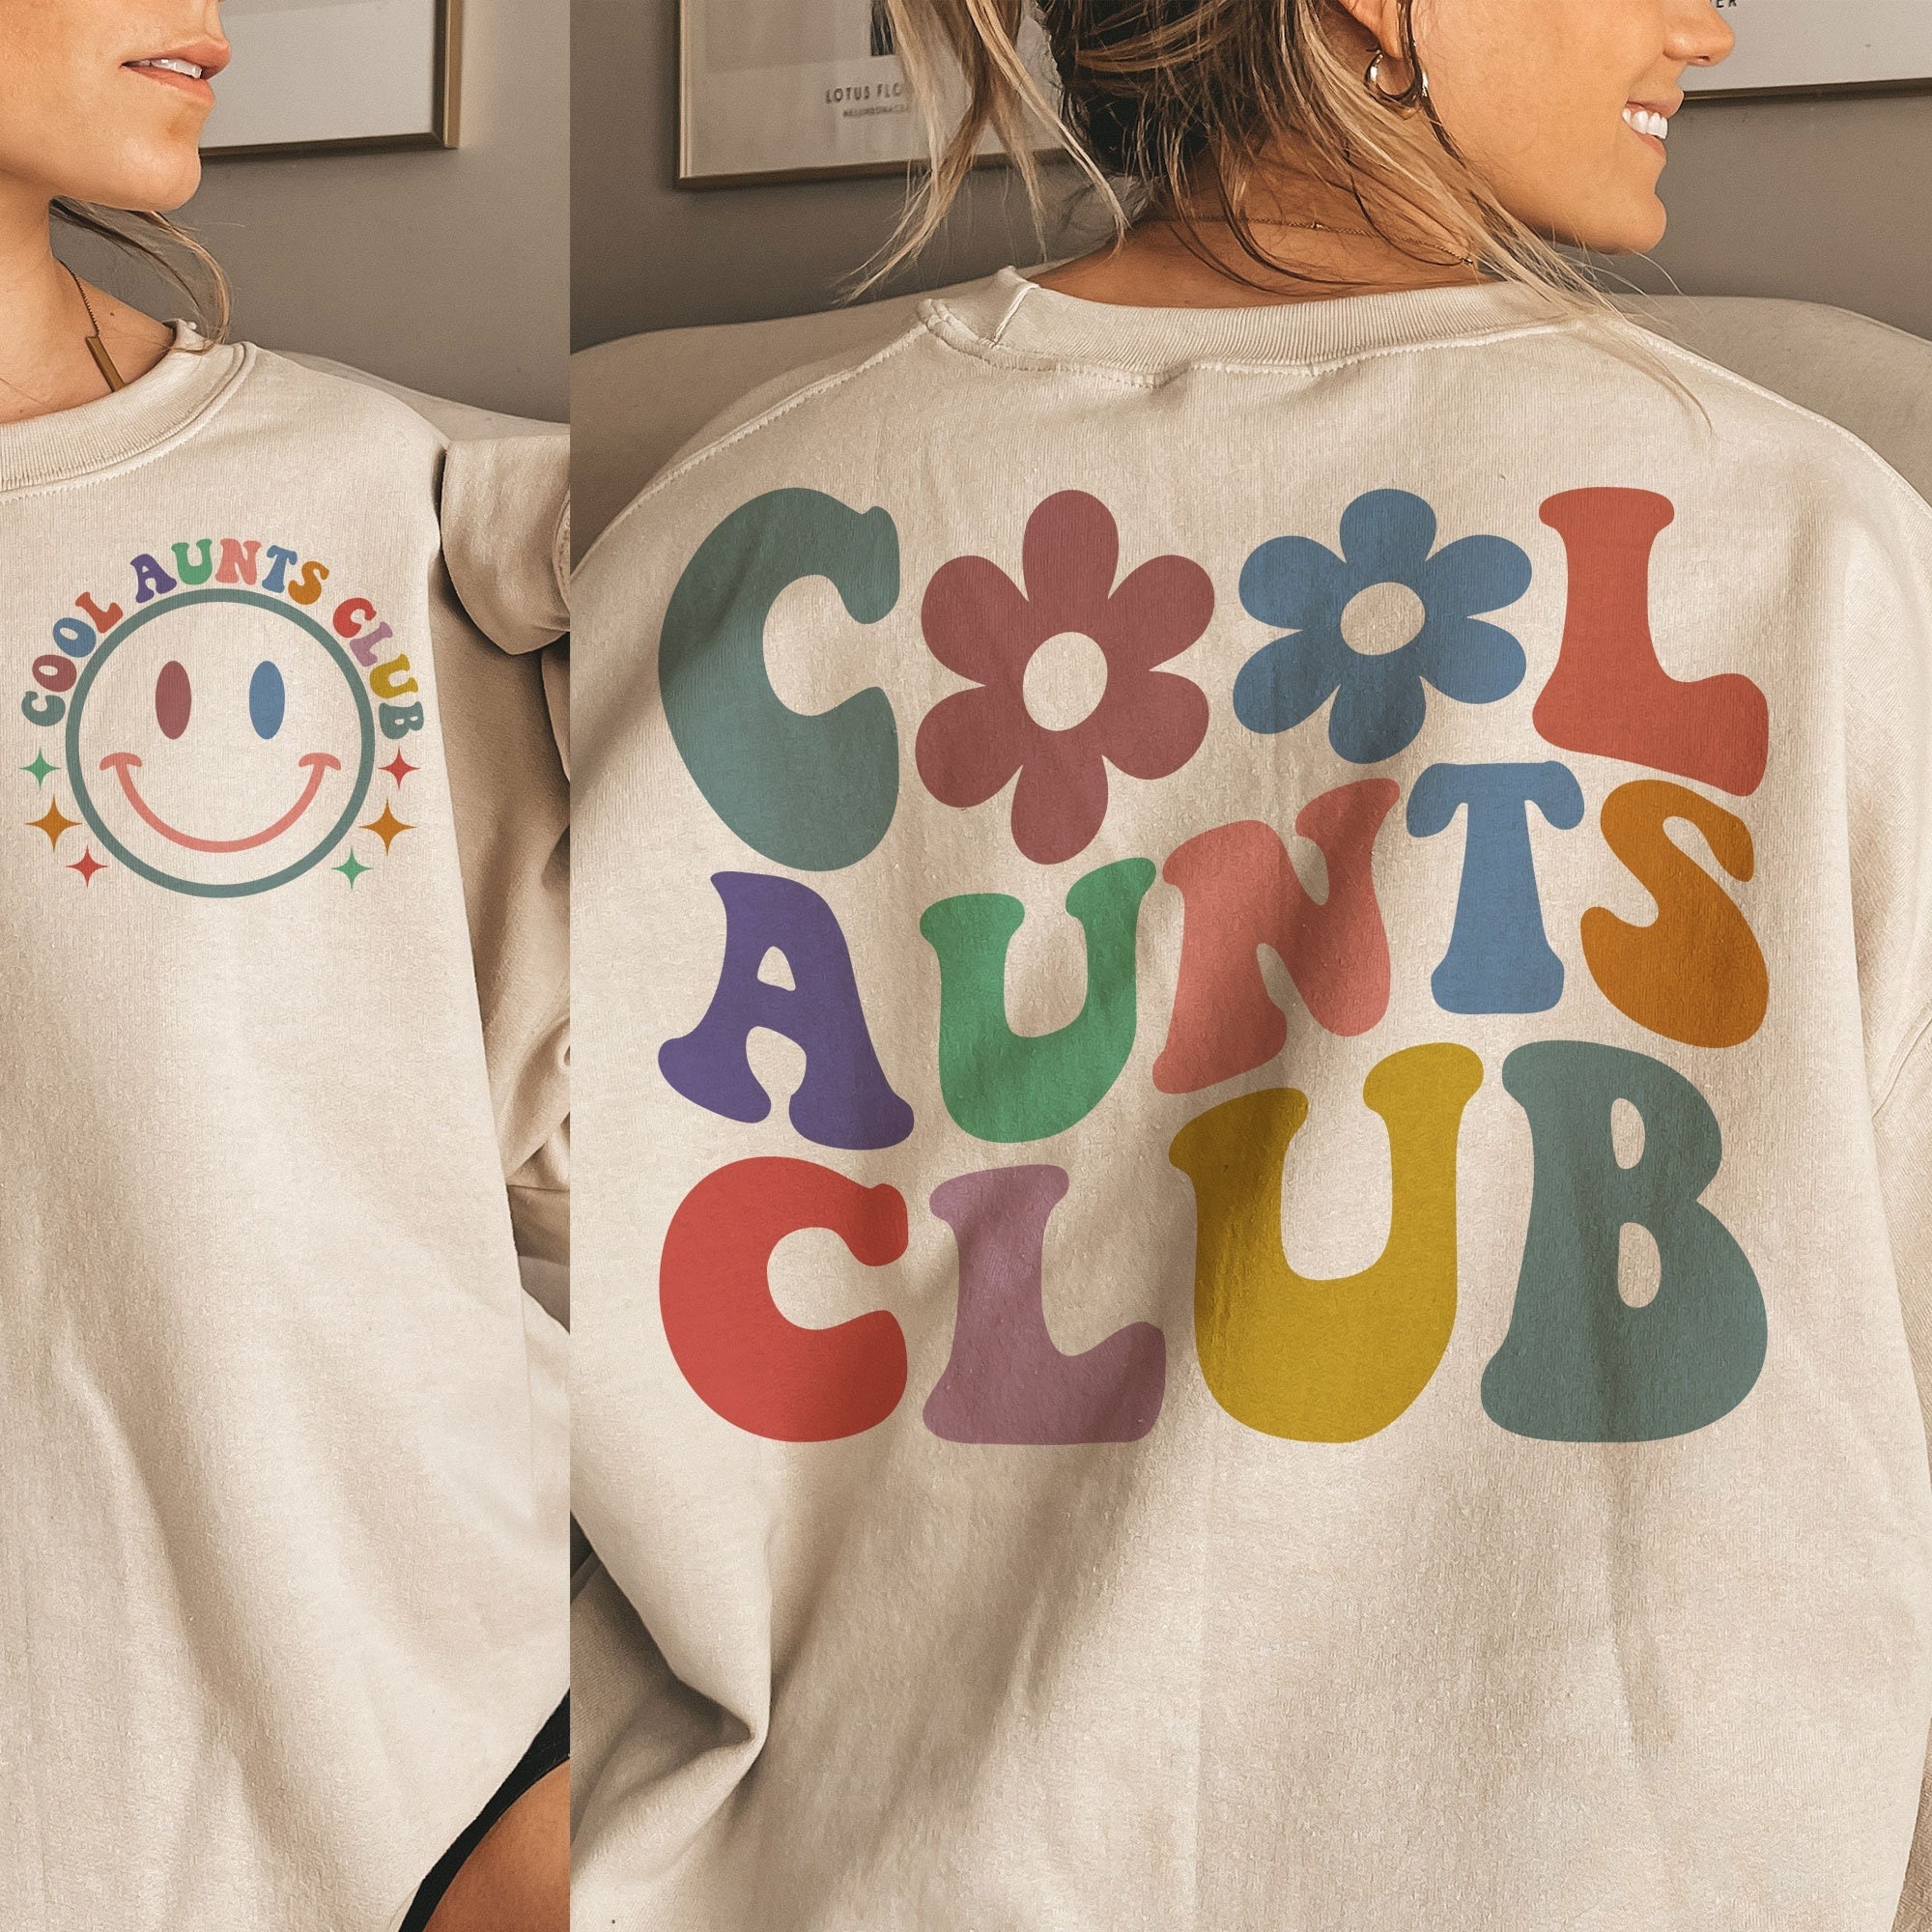 Discover Cool Aunts Club SVG, Cool Aunts Club PNG, Aunts Svg, Aunt To Be Svg, Aunts Shirt Svg, Wavy Svg, Cricut Svg, Png Silhouette Cricut